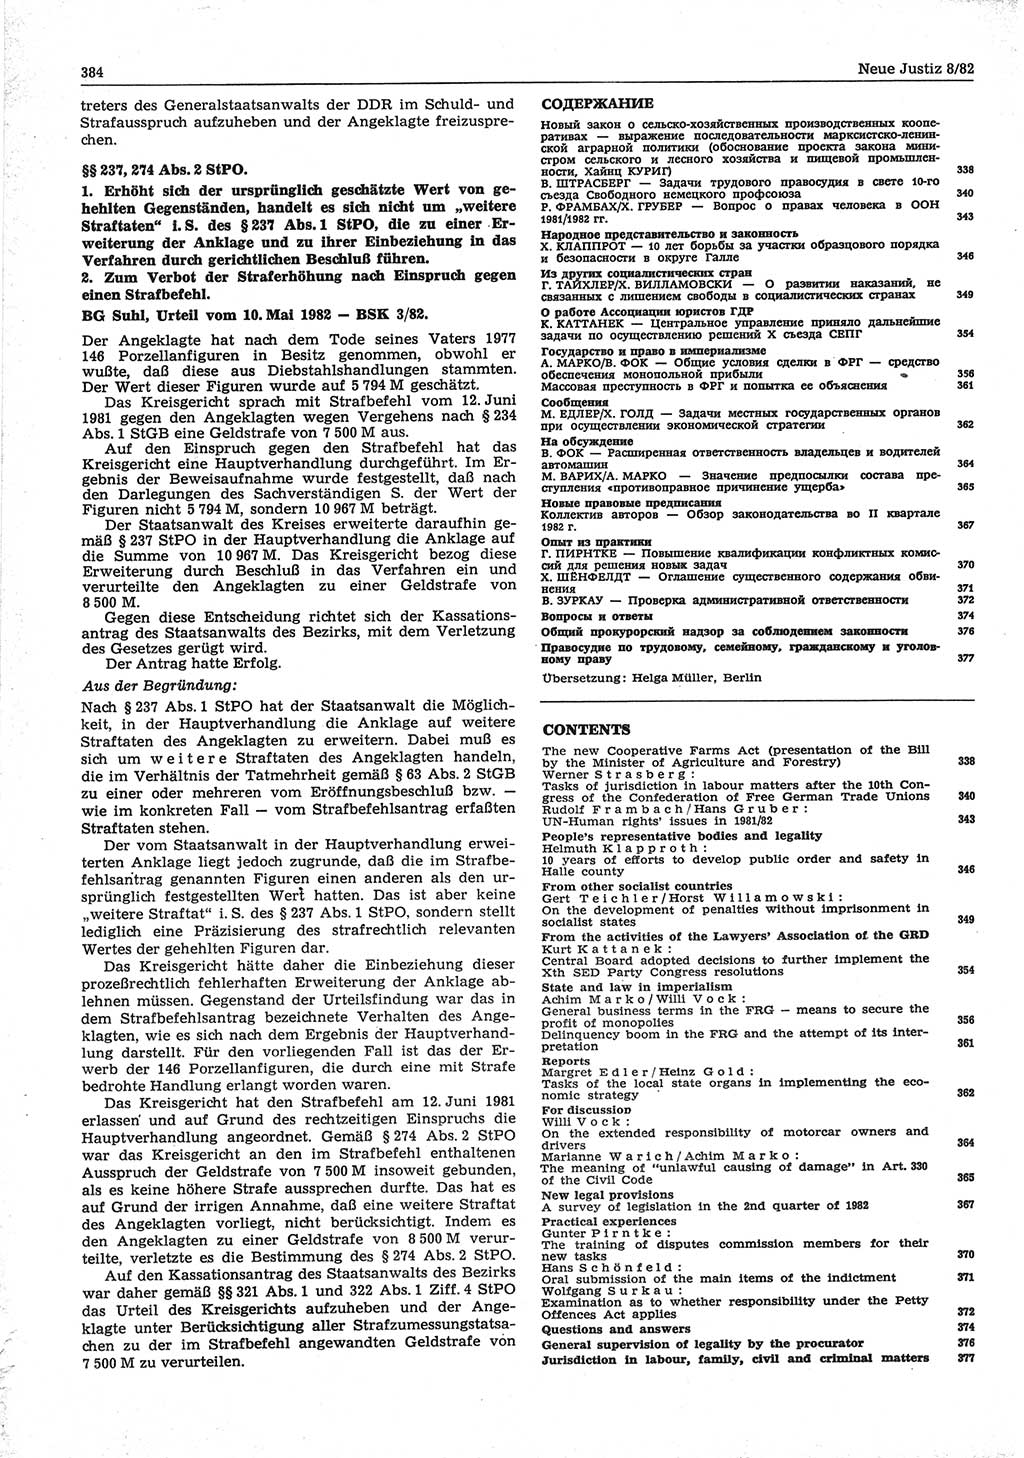 Neue Justiz (NJ), Zeitschrift für sozialistisches Recht und Gesetzlichkeit [Deutsche Demokratische Republik (DDR)], 36. Jahrgang 1982, Seite 384 (NJ DDR 1982, S. 384)